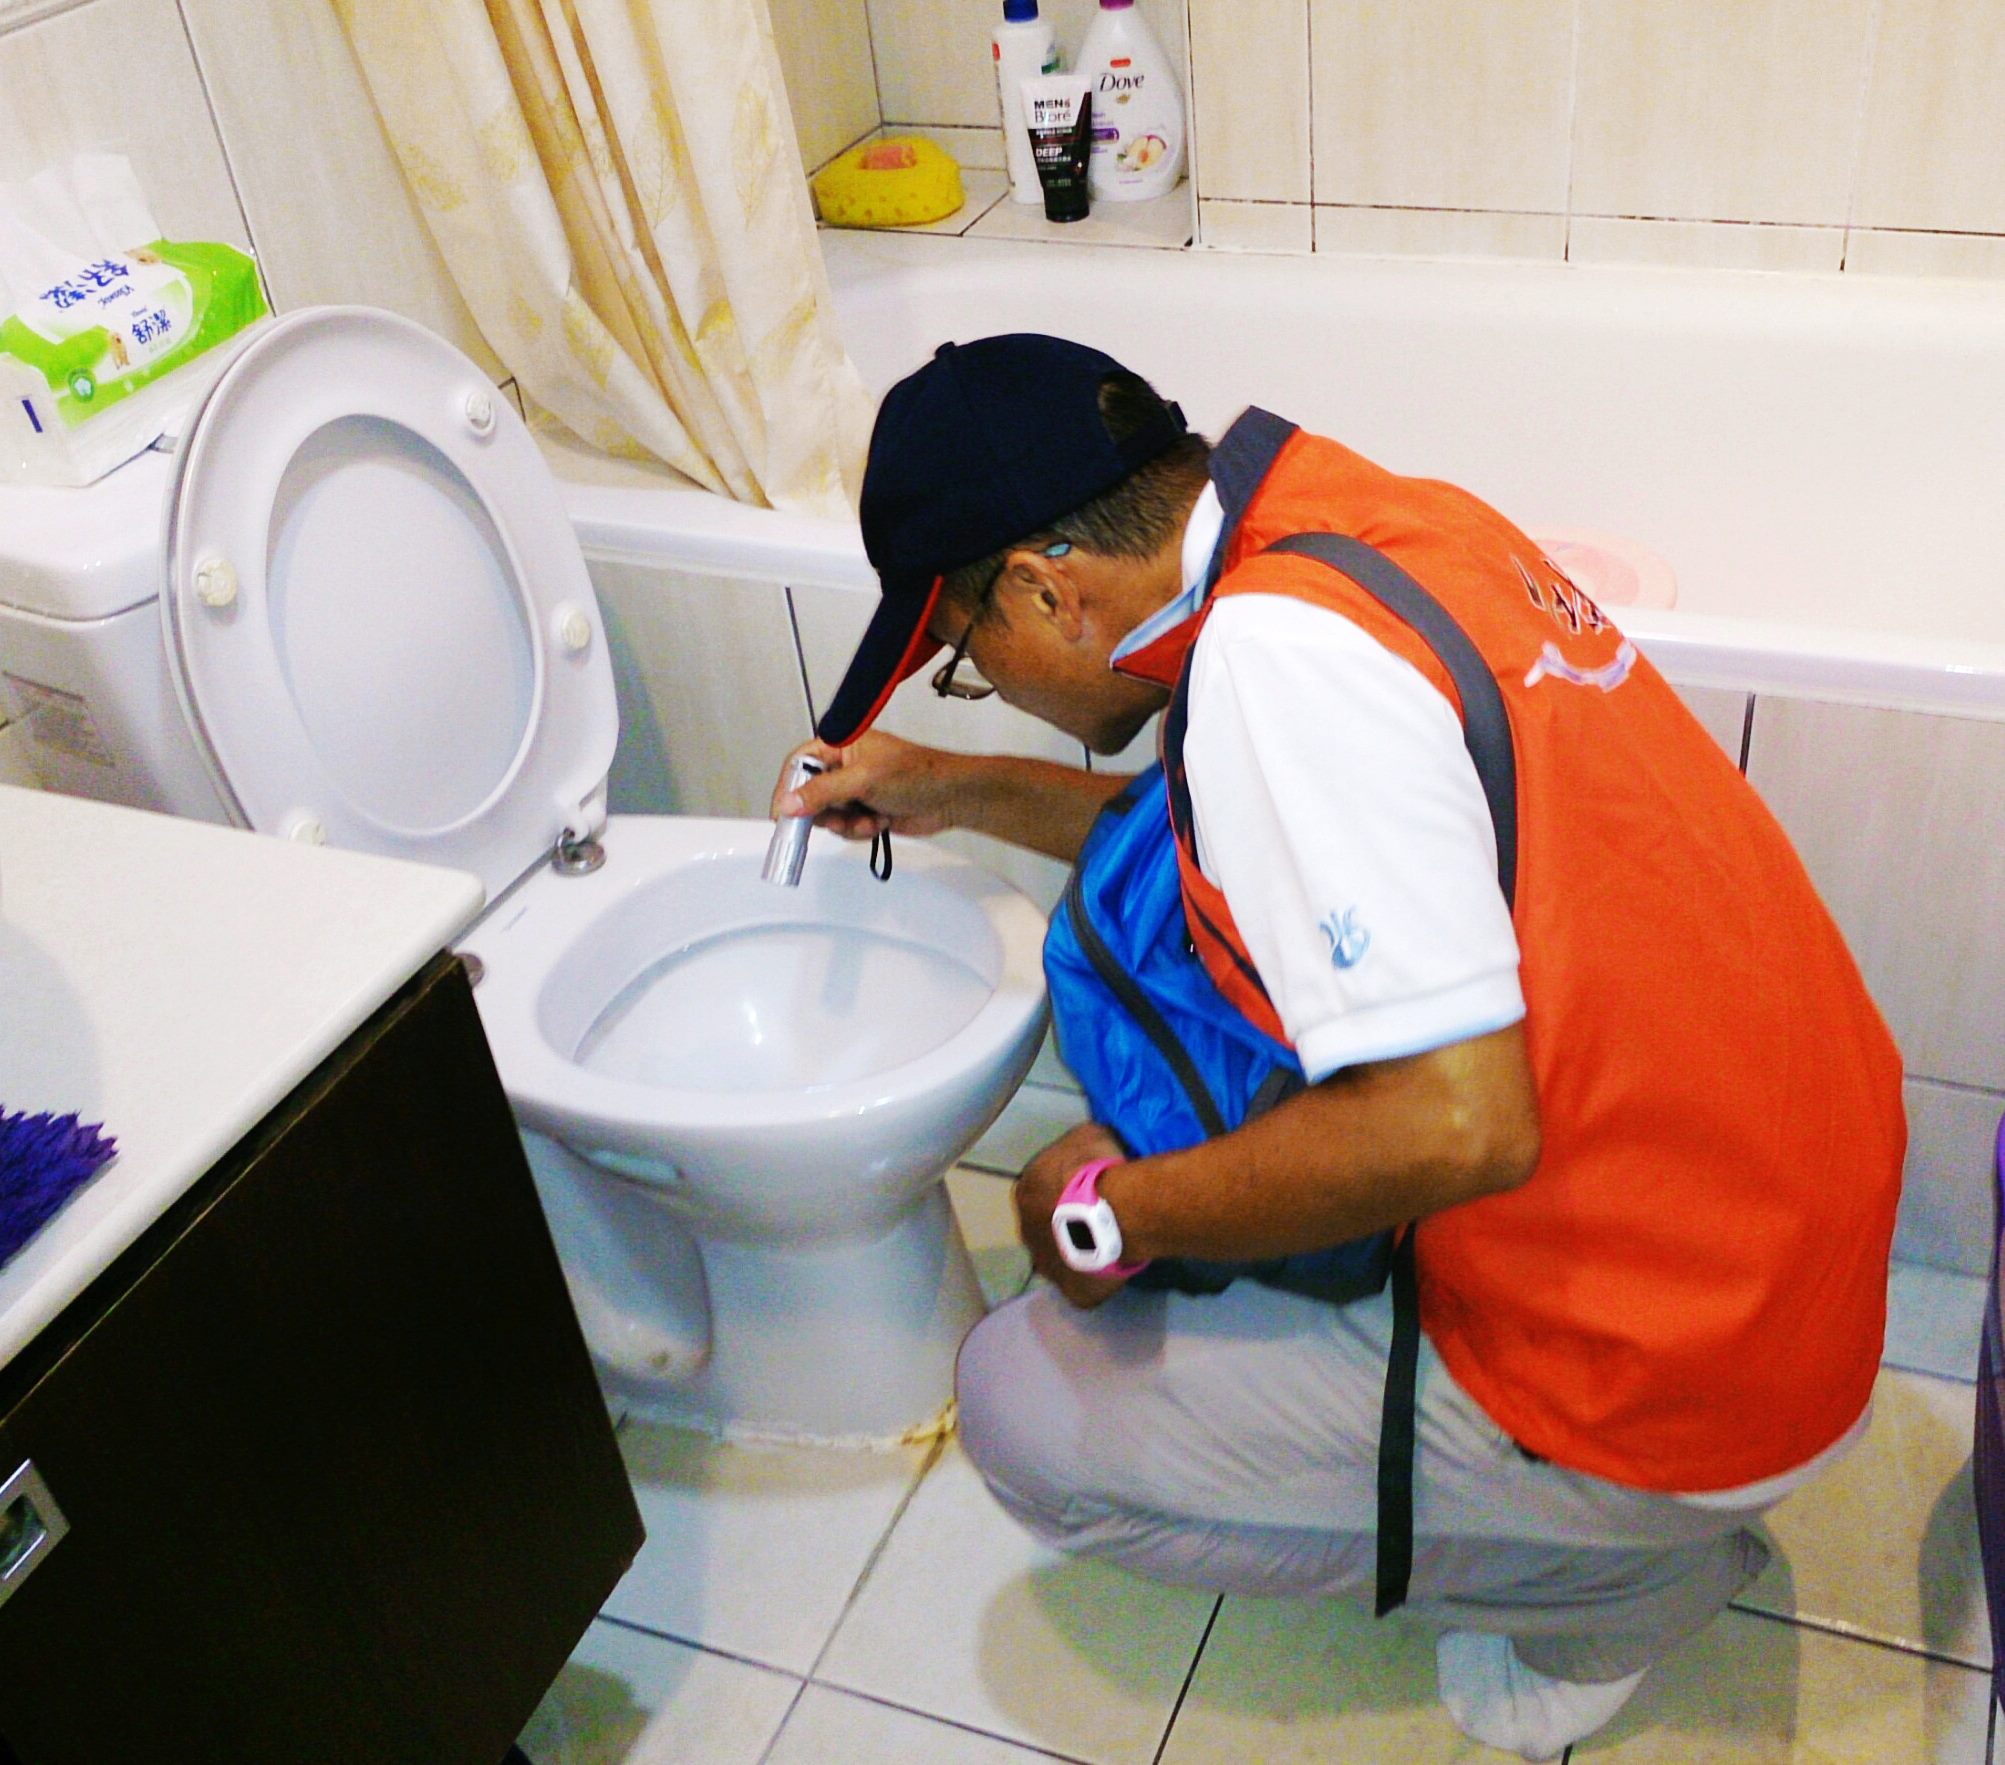 Inspection of household toilet for leaks